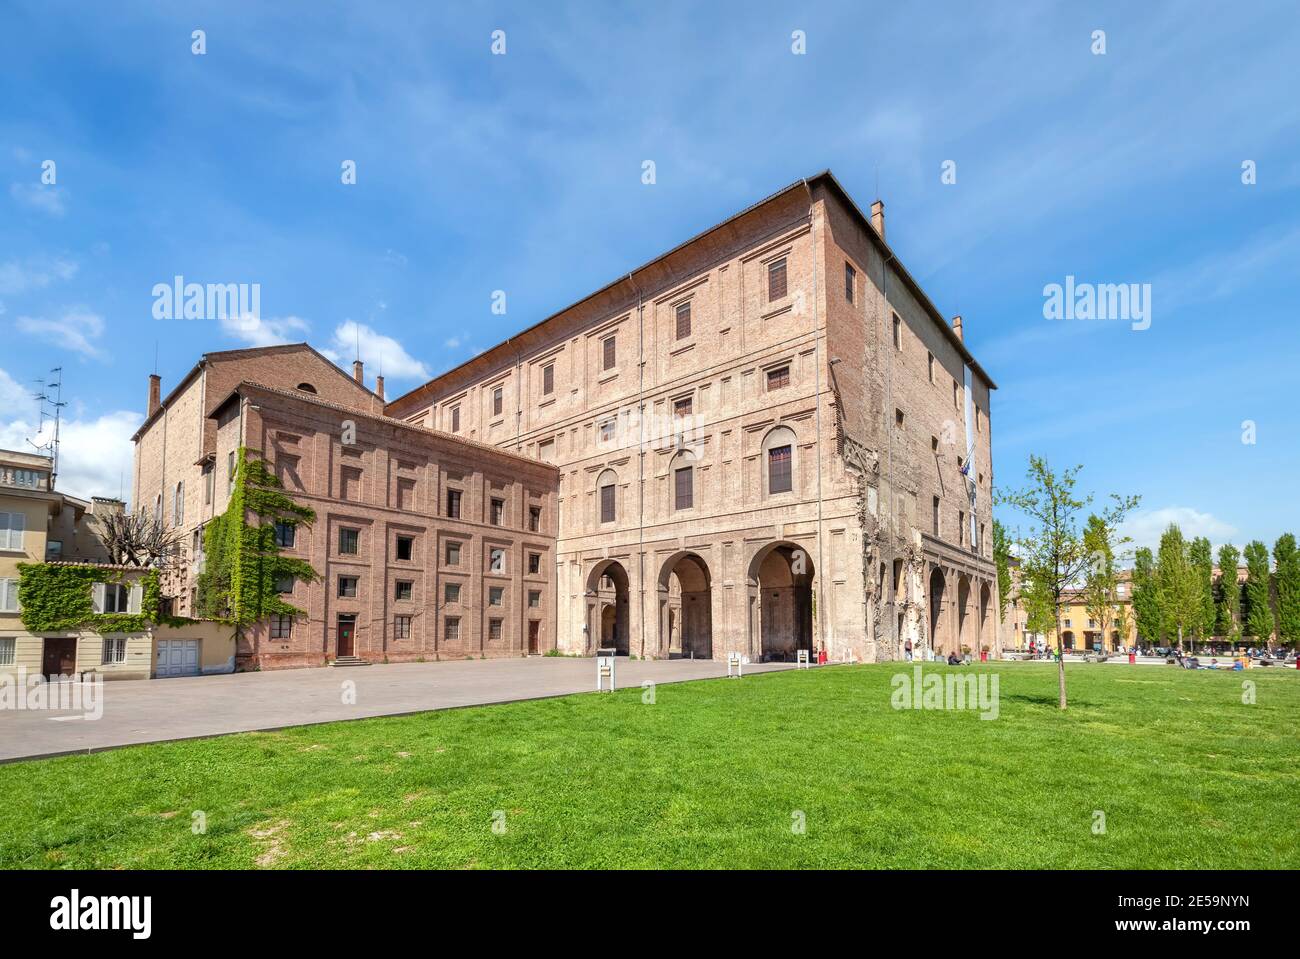 Parma, Italien. Blick auf den Palazzo della Pilotta - Palastkomplex aus dem 16. Jahrhundert im historischen Zentrum der Stadt Stockfoto